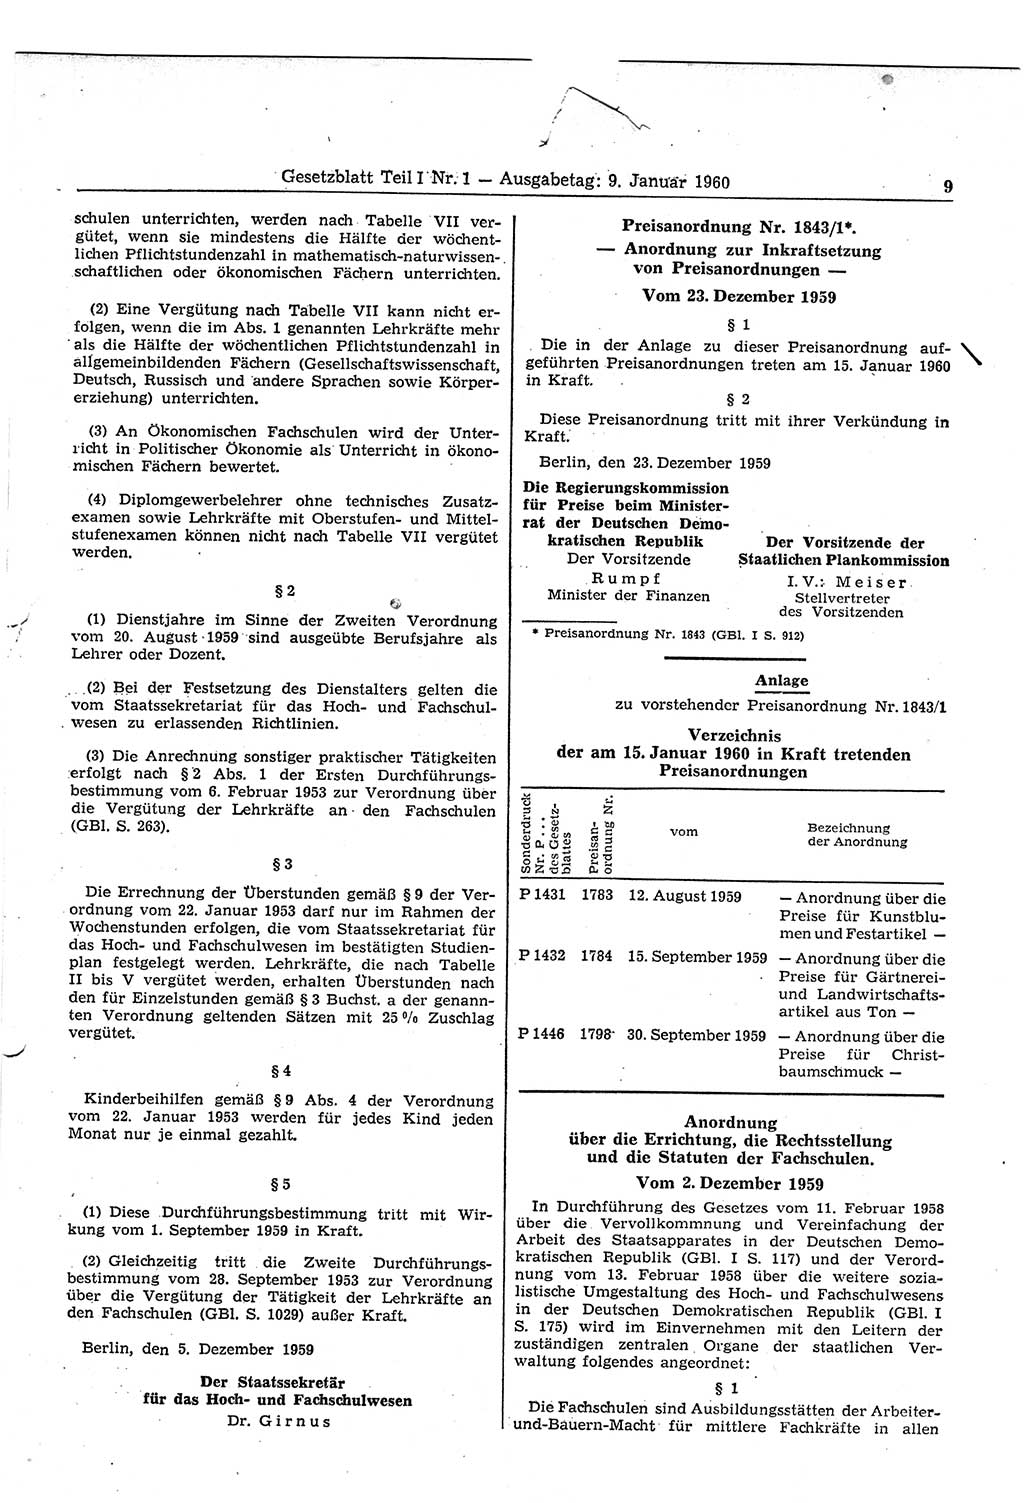 Gesetzblatt (GBl.) der Deutschen Demokratischen Republik (DDR) Teil Ⅰ 1960, Seite 9 (GBl. DDR Ⅰ 1960, S. 9)